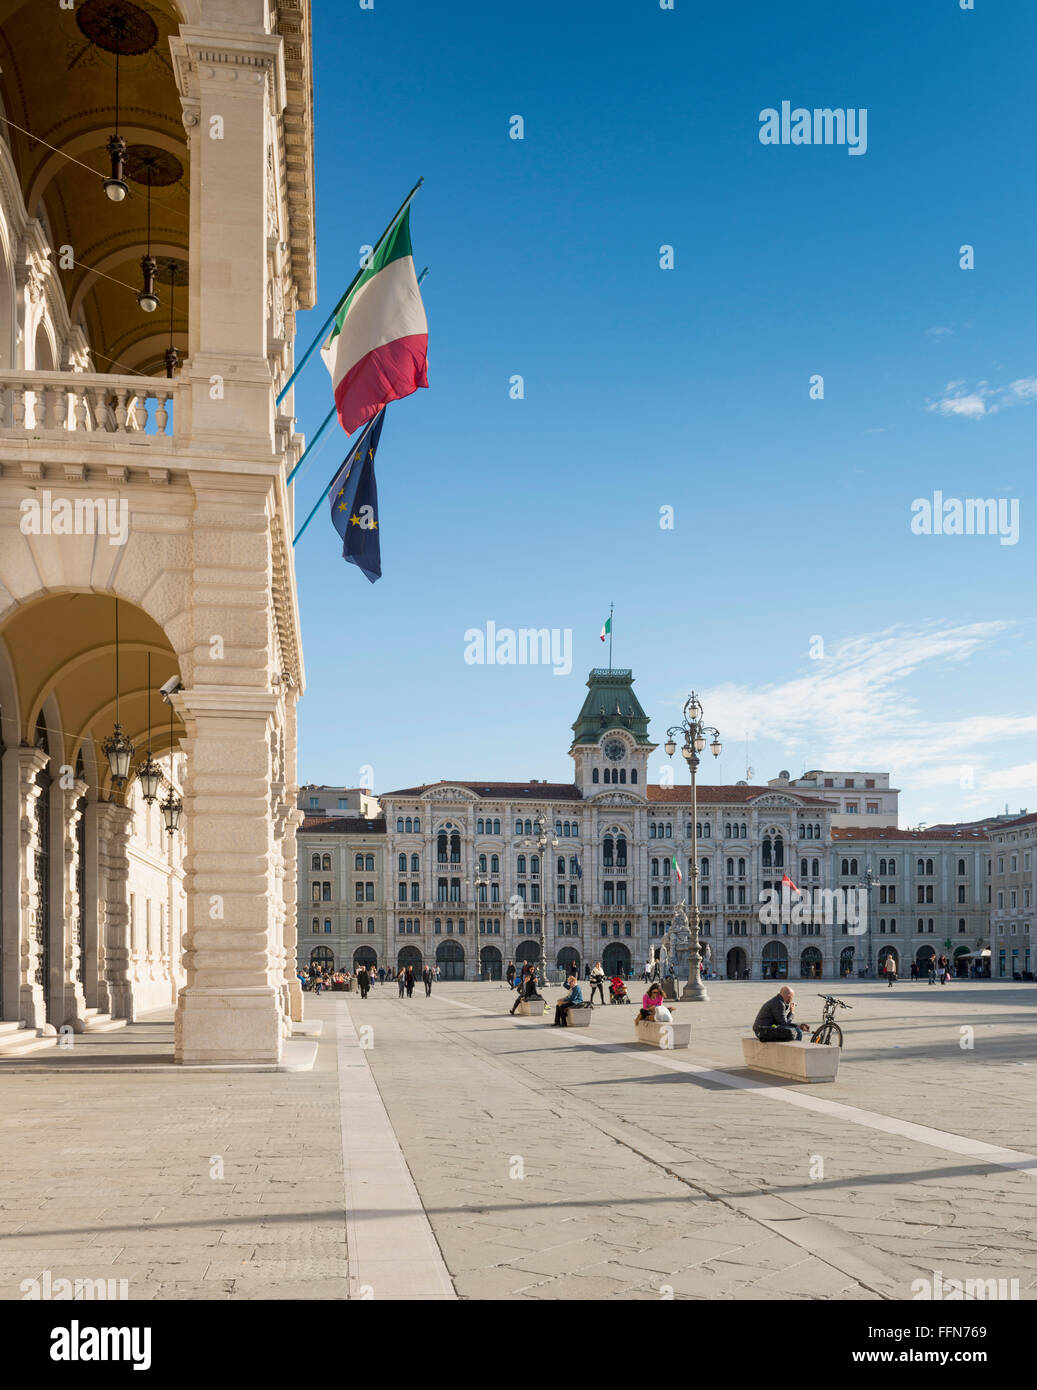 Les touristes à la Piazza Unità d'Italia, Trieste, Italie, Europe Banque D'Images